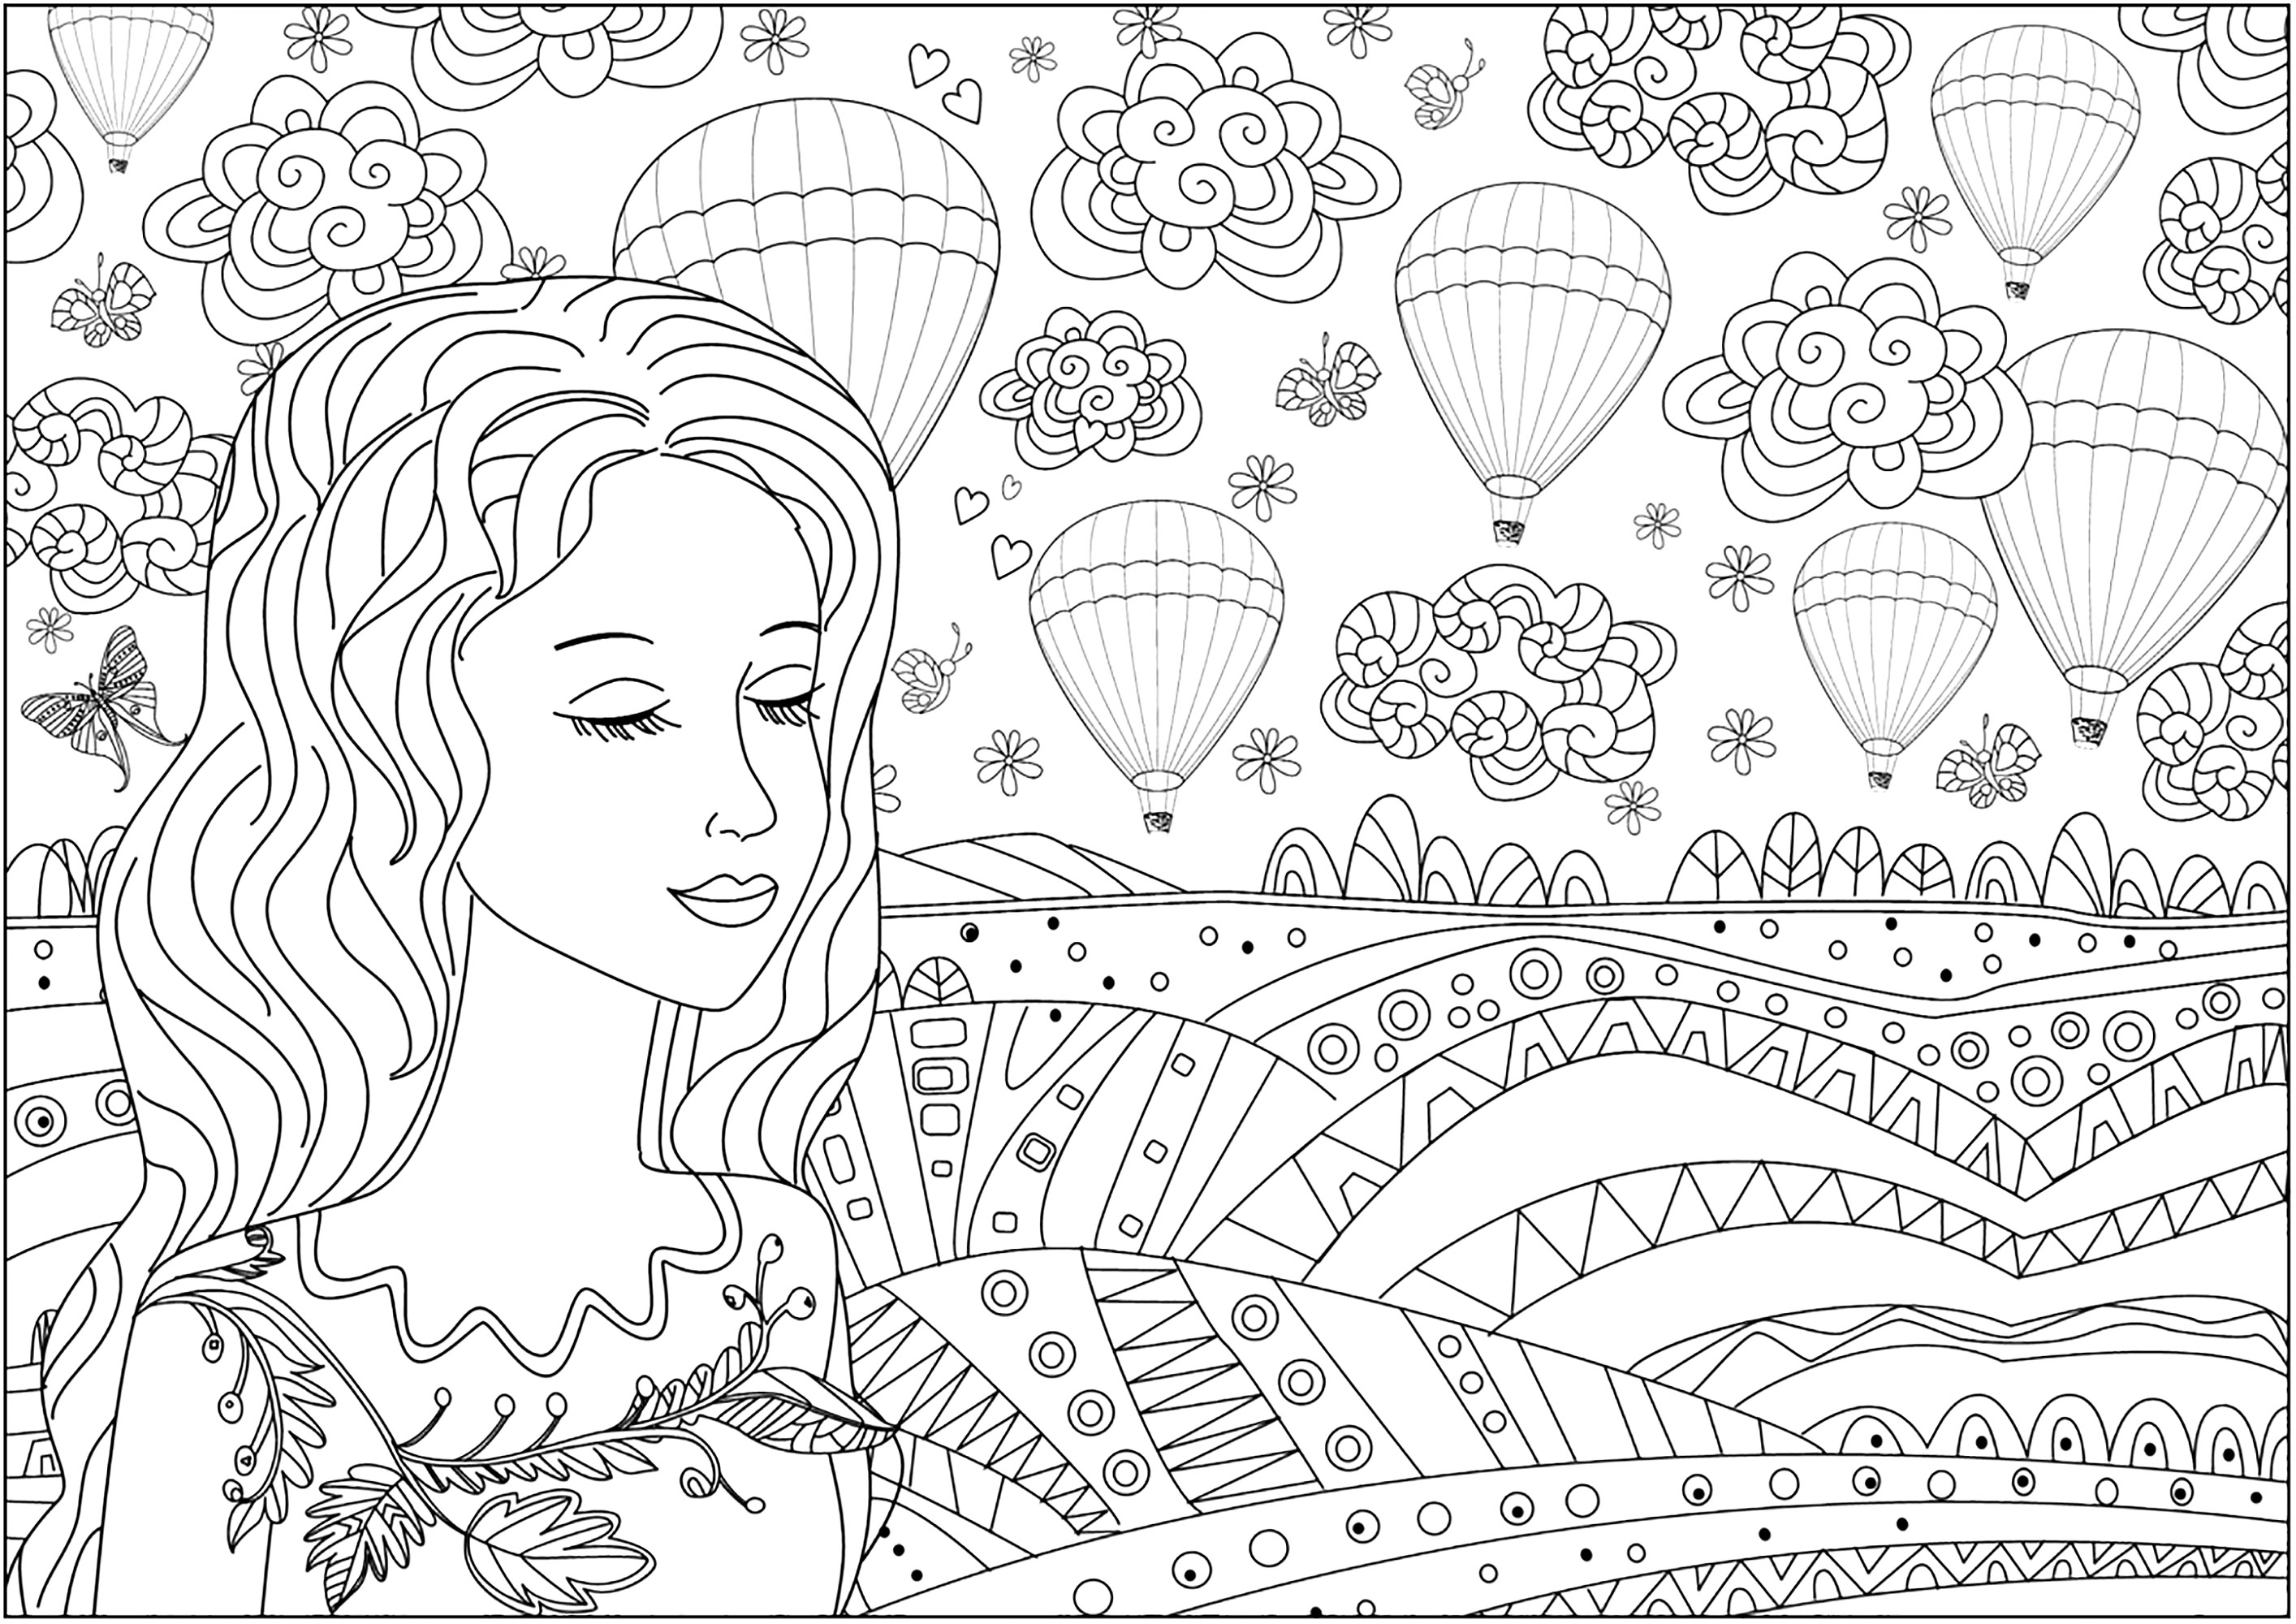 Mulher reflectora em frente a uma planície e balões de ar quente no céu. Muitos pormenores para colorir neste bonito e original desenho para colorir.